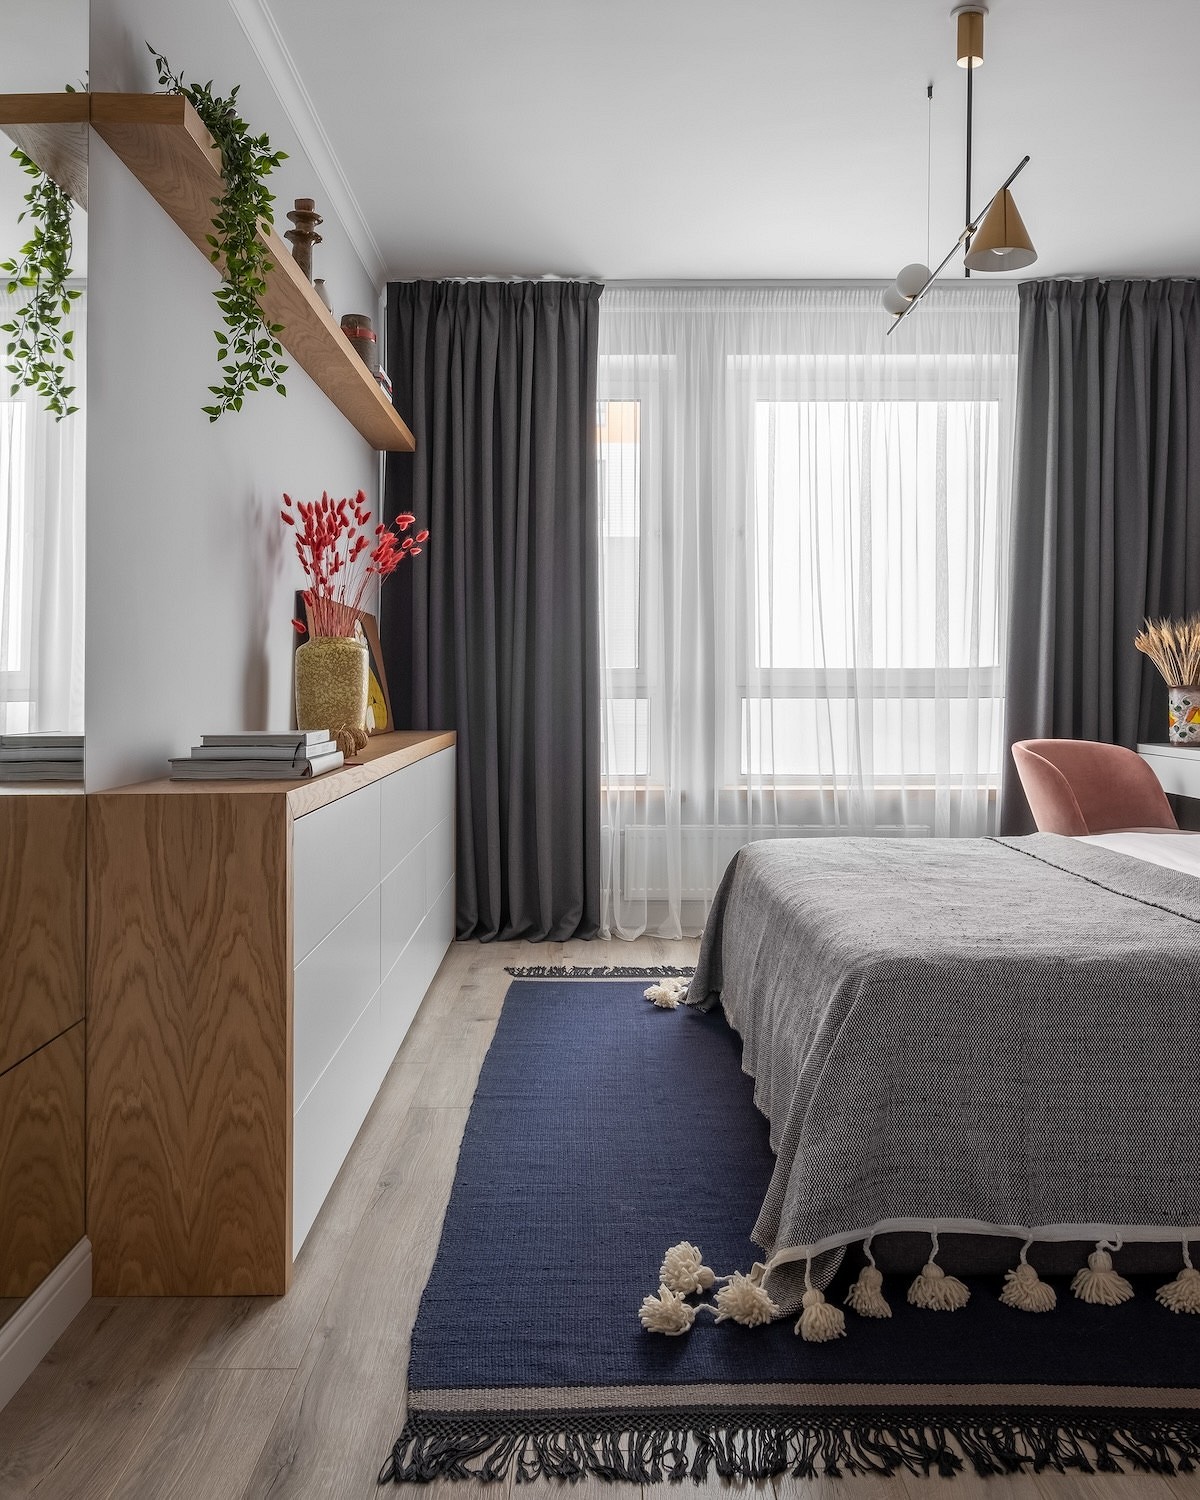 Как из типовой квартиры сделать стильную и уютную? Пример от дизайнера на площади 65 кв. м (фото до и после)23